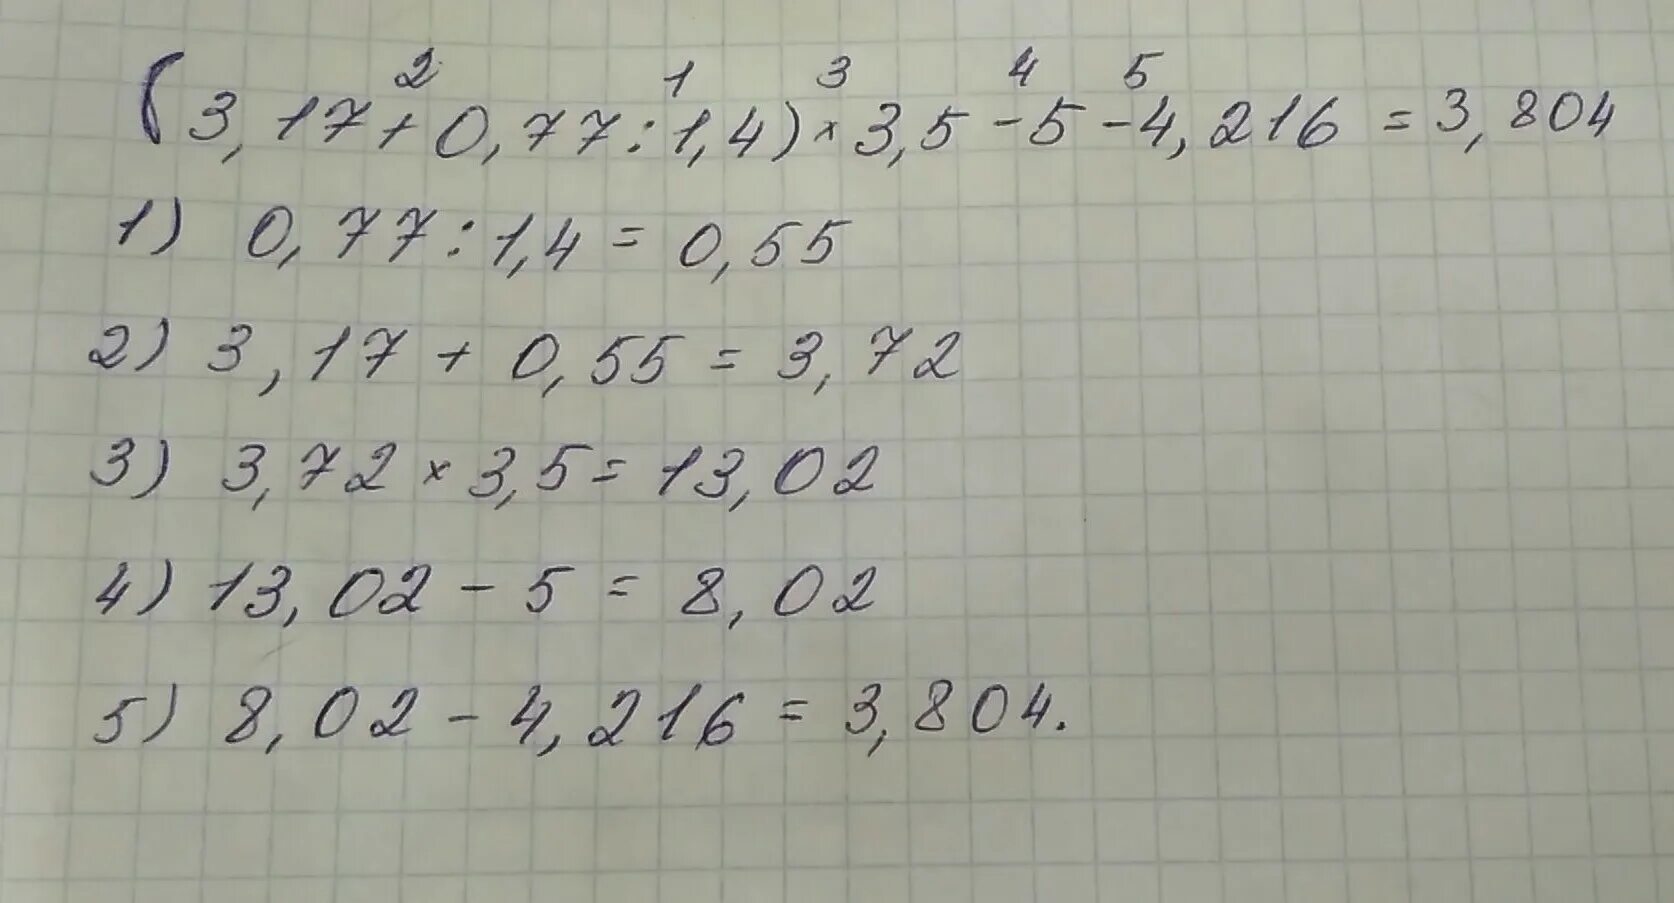 1.3 5.0. (3,17+0,77:1,4)*3,5-4,216=Решение. Найдите значение выражения 3 17 0 77 1 4 3 5 4 216. (3,17+0,77:1,4)×3,5-4216 решение. (3,17+0,17:1,4)•3,5-4,216.